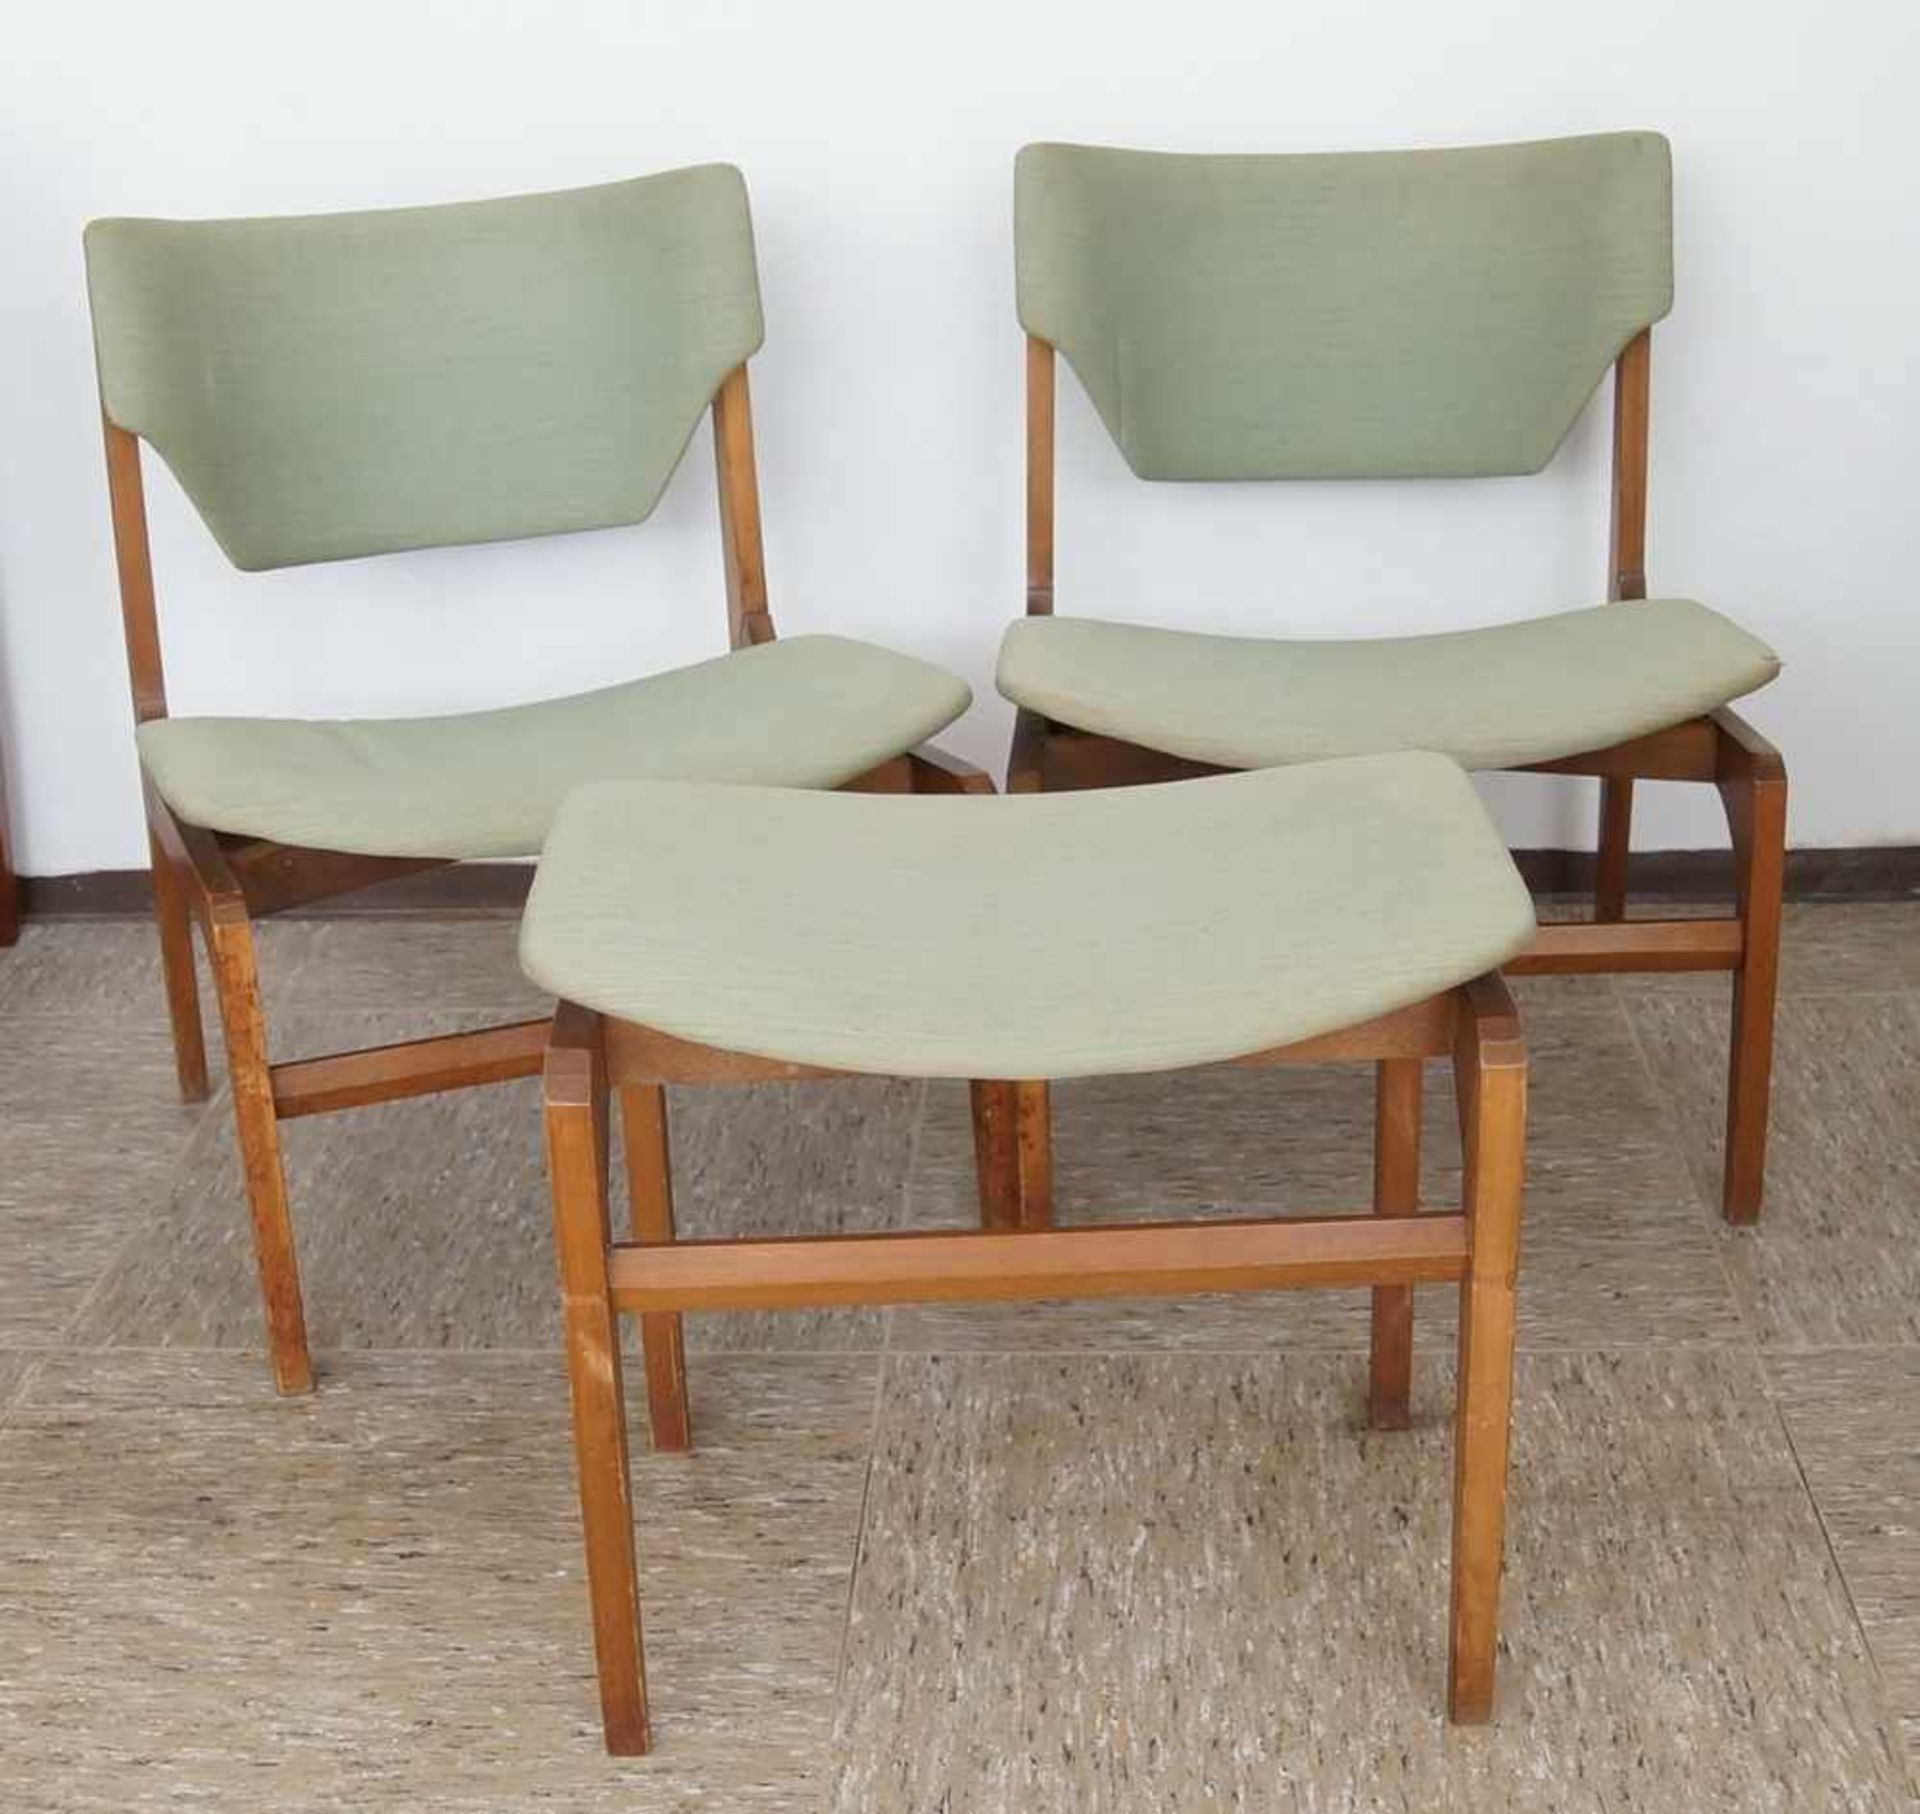 Zwei Stühle und ein Hocker, grüner Bezug, Gio Ponti zugesch. Italien, besch.,74x54x54xSH40 cm,